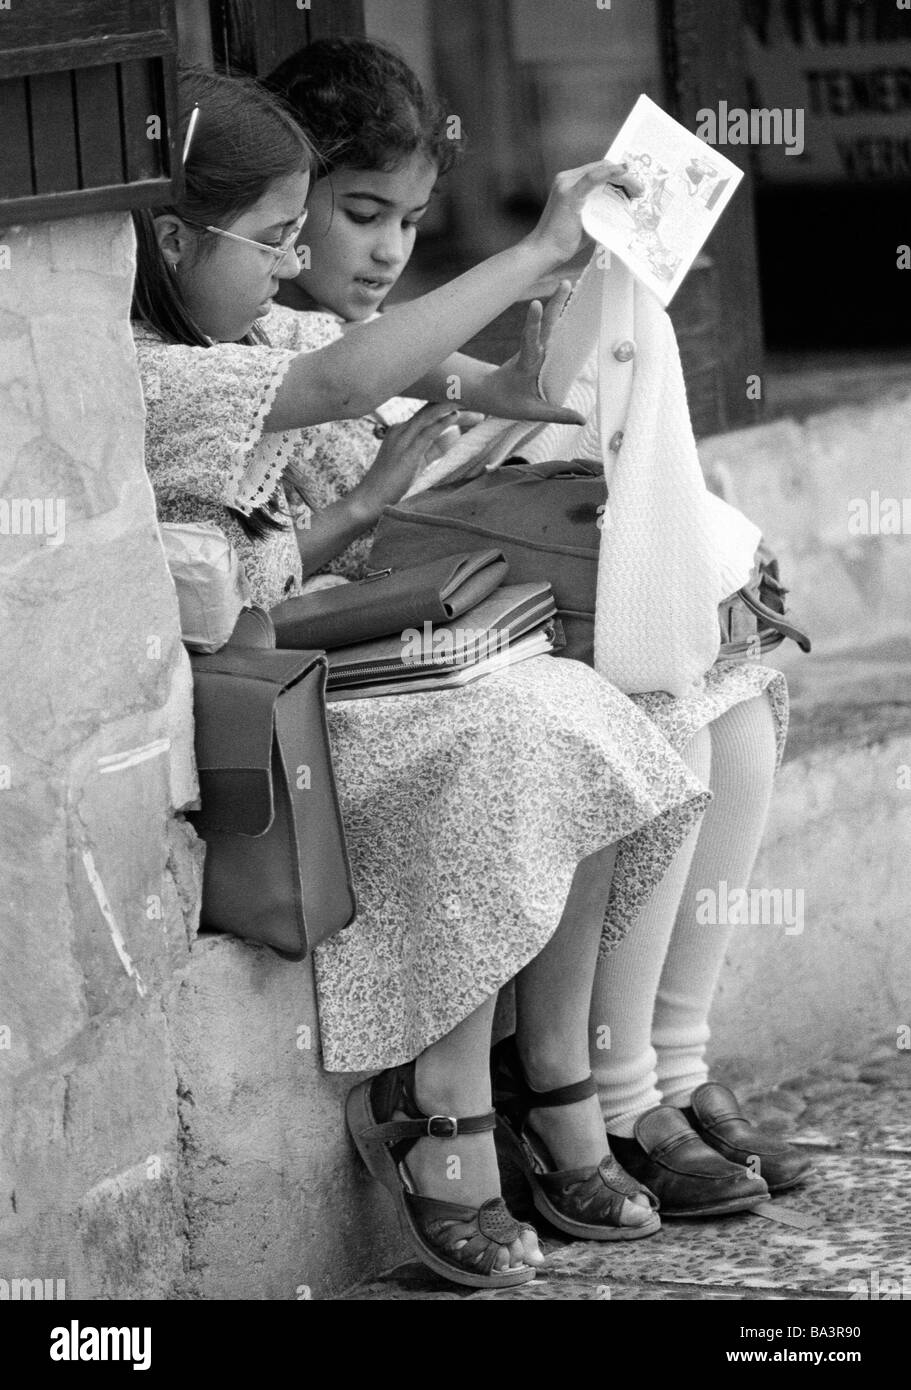 Années 1980, photo en noir et blanc, les gens, les enfants, deux écolières s'asseoir sur un mur avec leurs cartables, âgés de 9 à 12 ans, l'Espagne, Îles Canaries, Tenerife, Puerto de la Cruz Banque D'Images